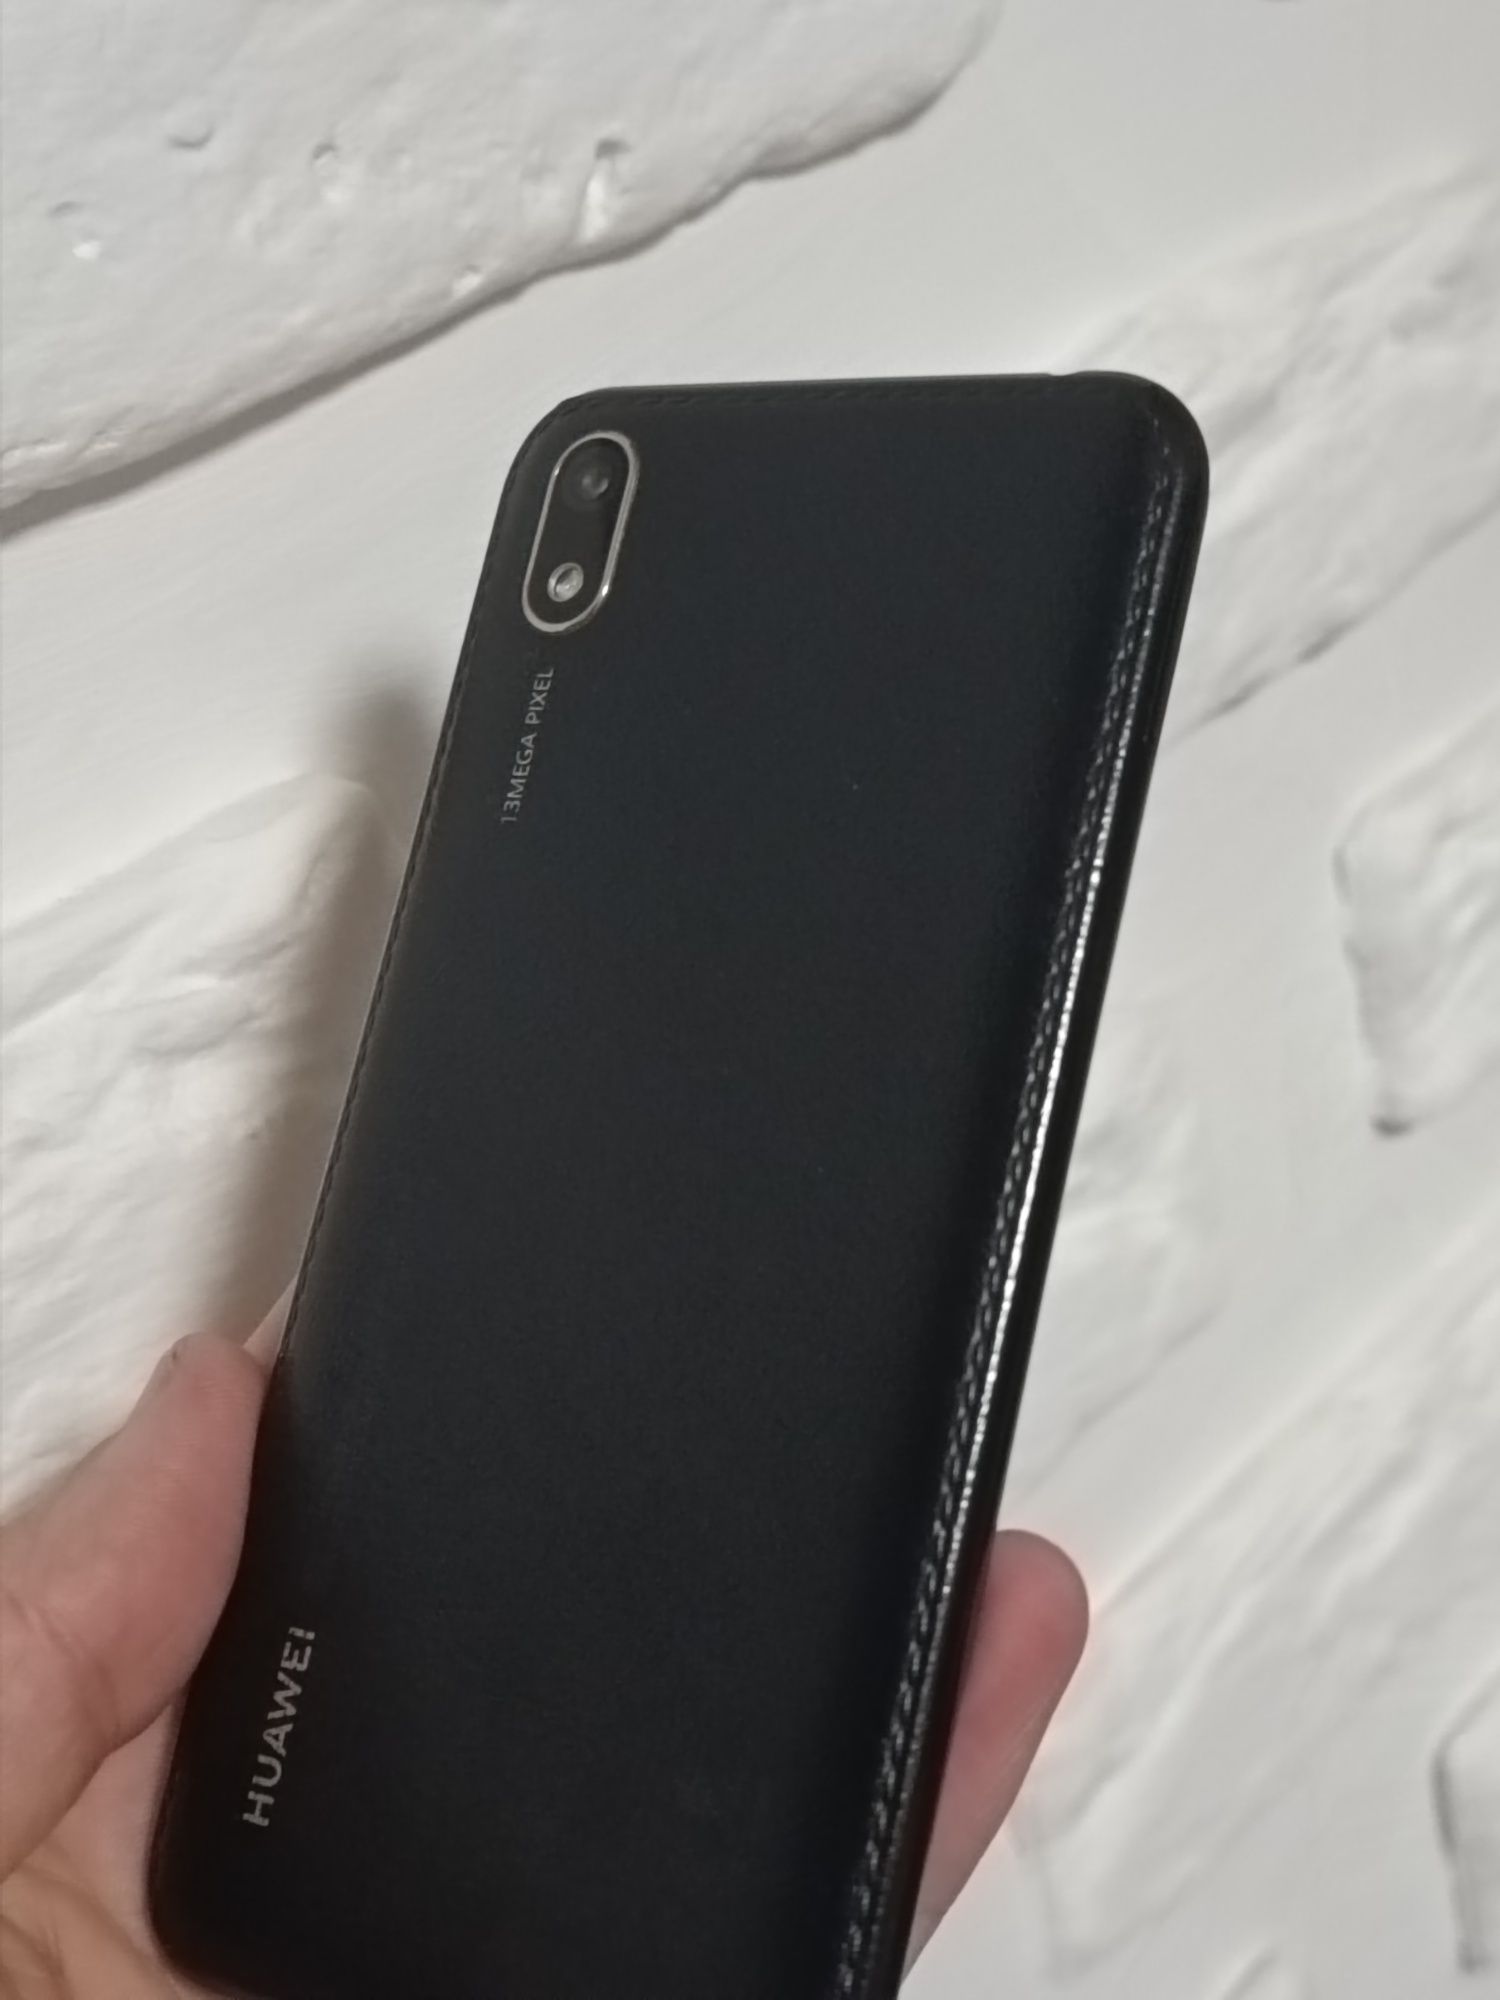 Huawei Y5 2019 (AMN-LX9)